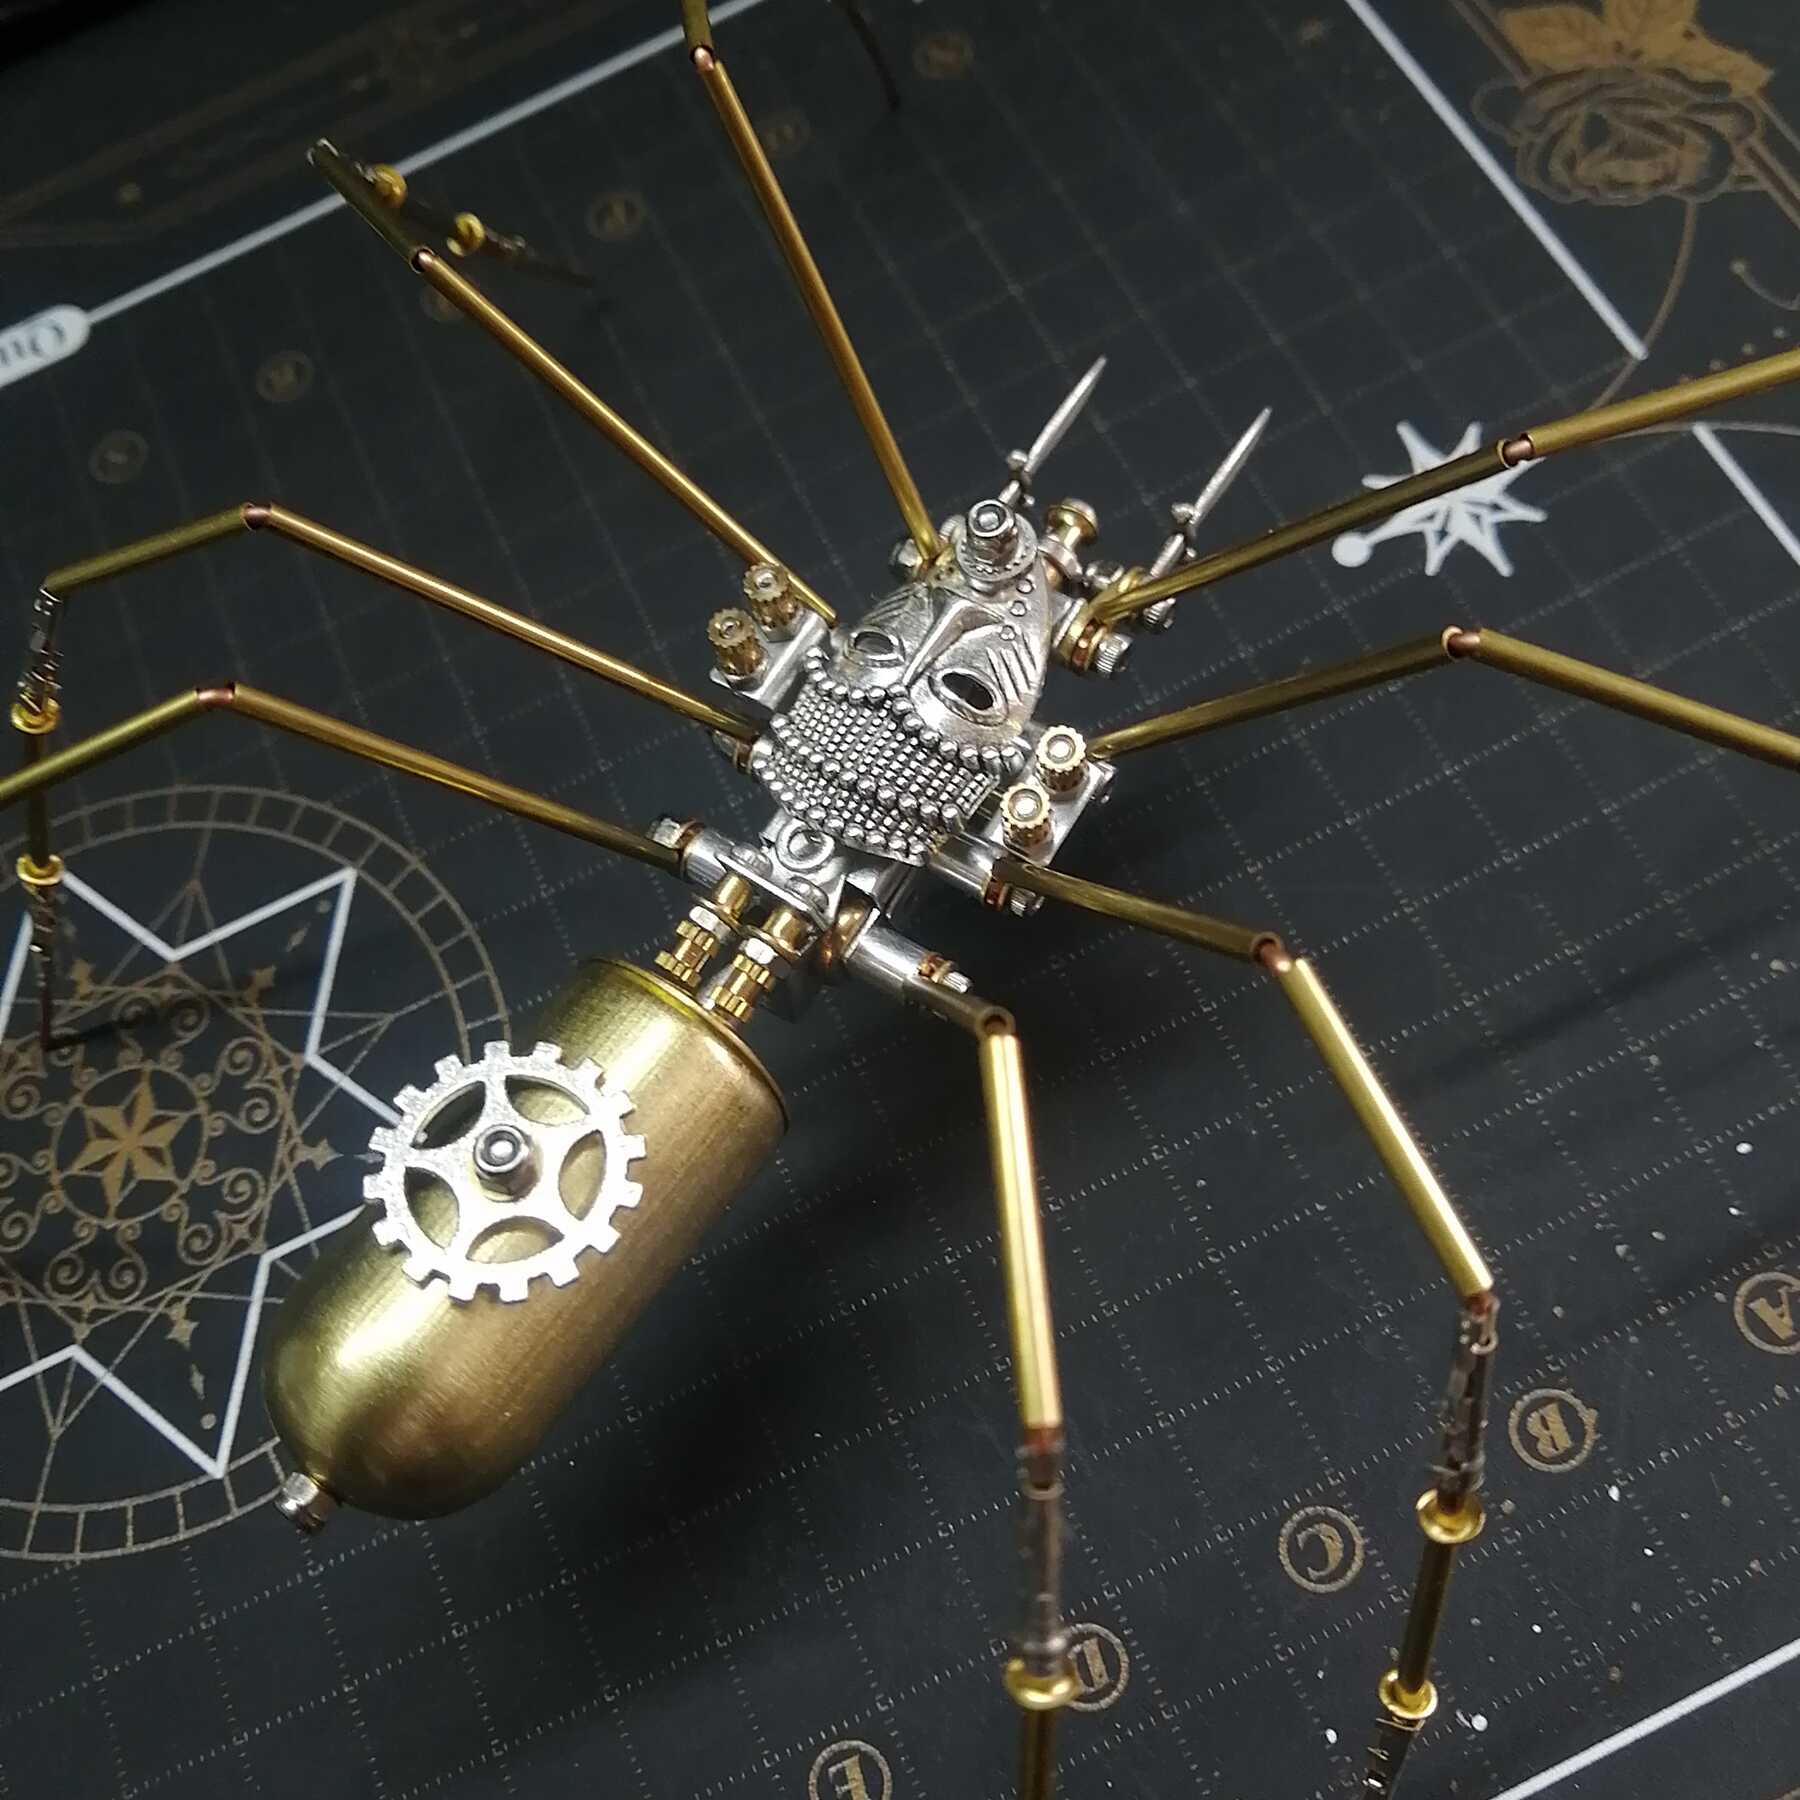 机械昆虫金属拼装蜘蛛模型蒸汽朋克风高难度手工DIY男孩生日礼物